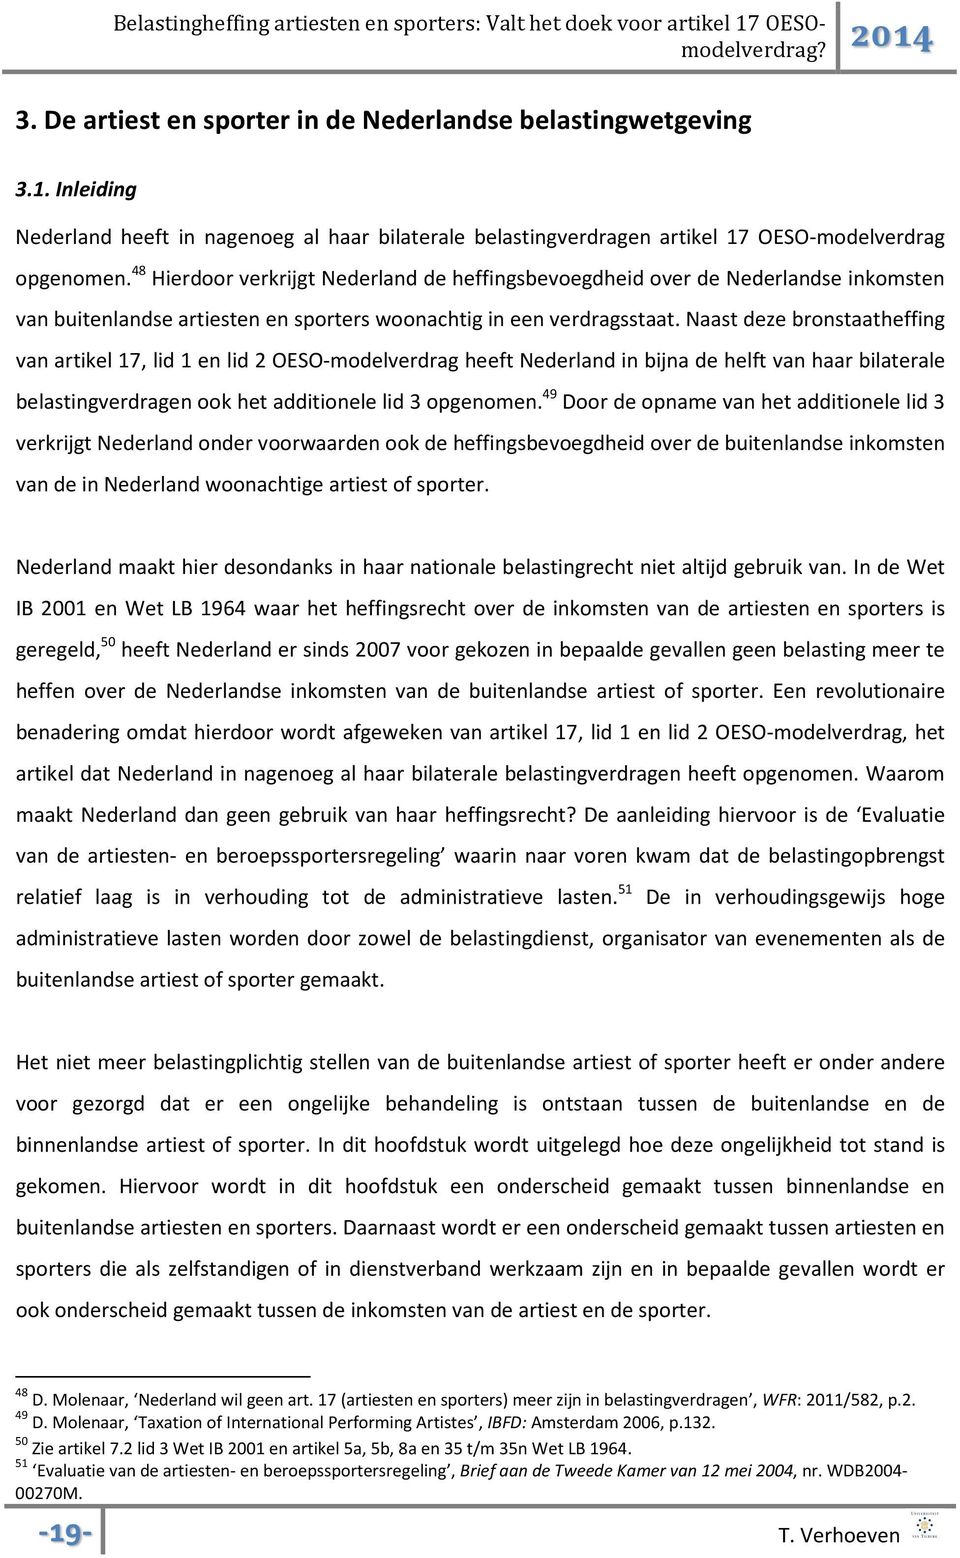 Naast deze bronstaatheffing van artikel 17, lid 1 en lid 2 OESO-modelverdrag heeft Nederland in bijna de helft van haar bilaterale belastingverdragen ook het additionele lid 3 opgenomen.